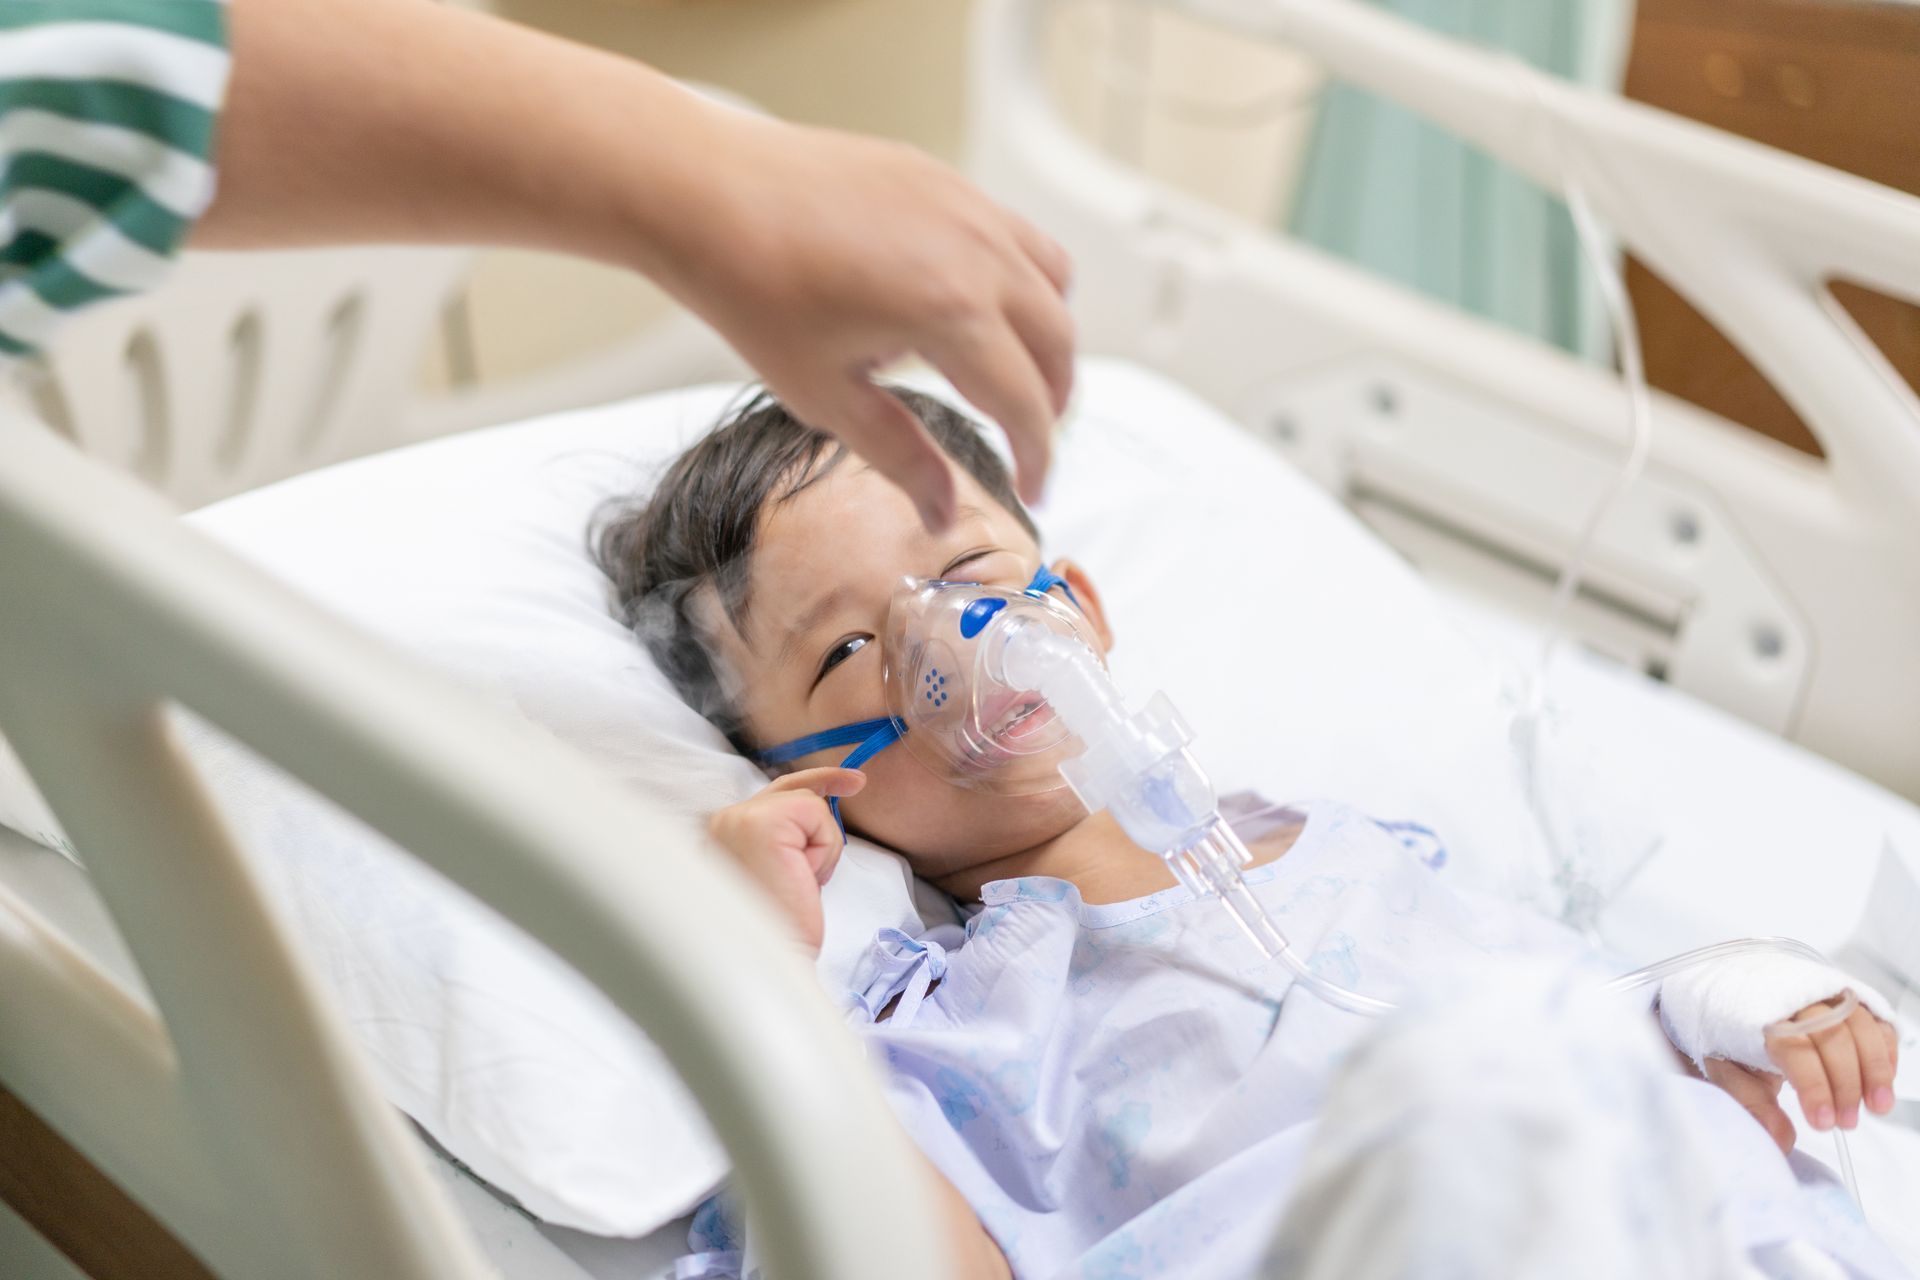 ein kleiner Junge liegt in einem Krankenhausbett und trägt eine Sauerstoffmaske